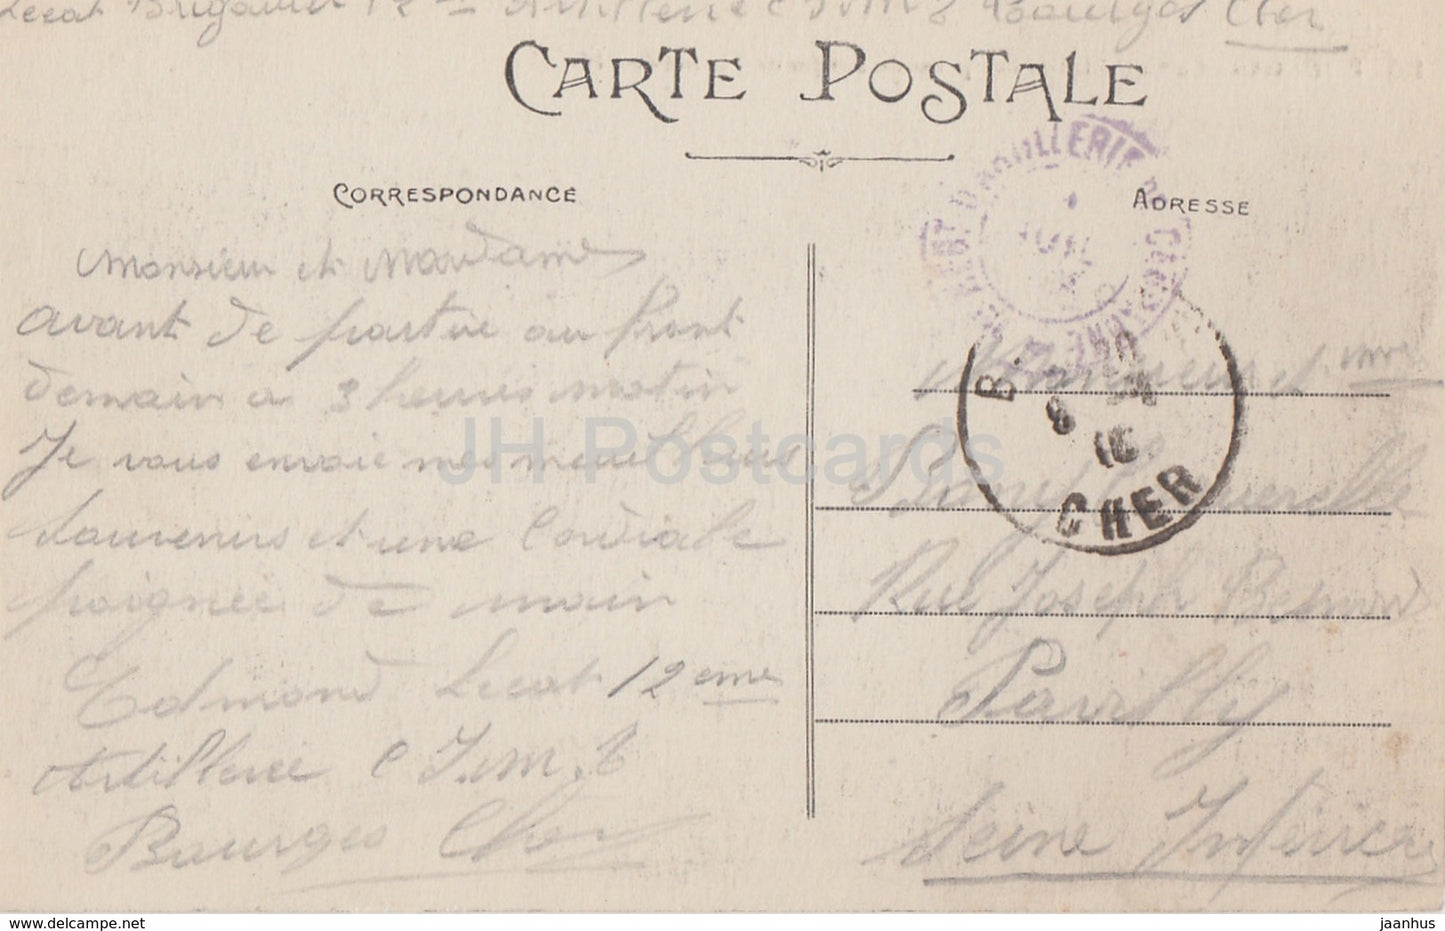 Bourges - La Cathédrale - Vue prise du Jardind l'Hôtel de Ville - cathédrale - 205 - carte postale ancienne - France - occasion